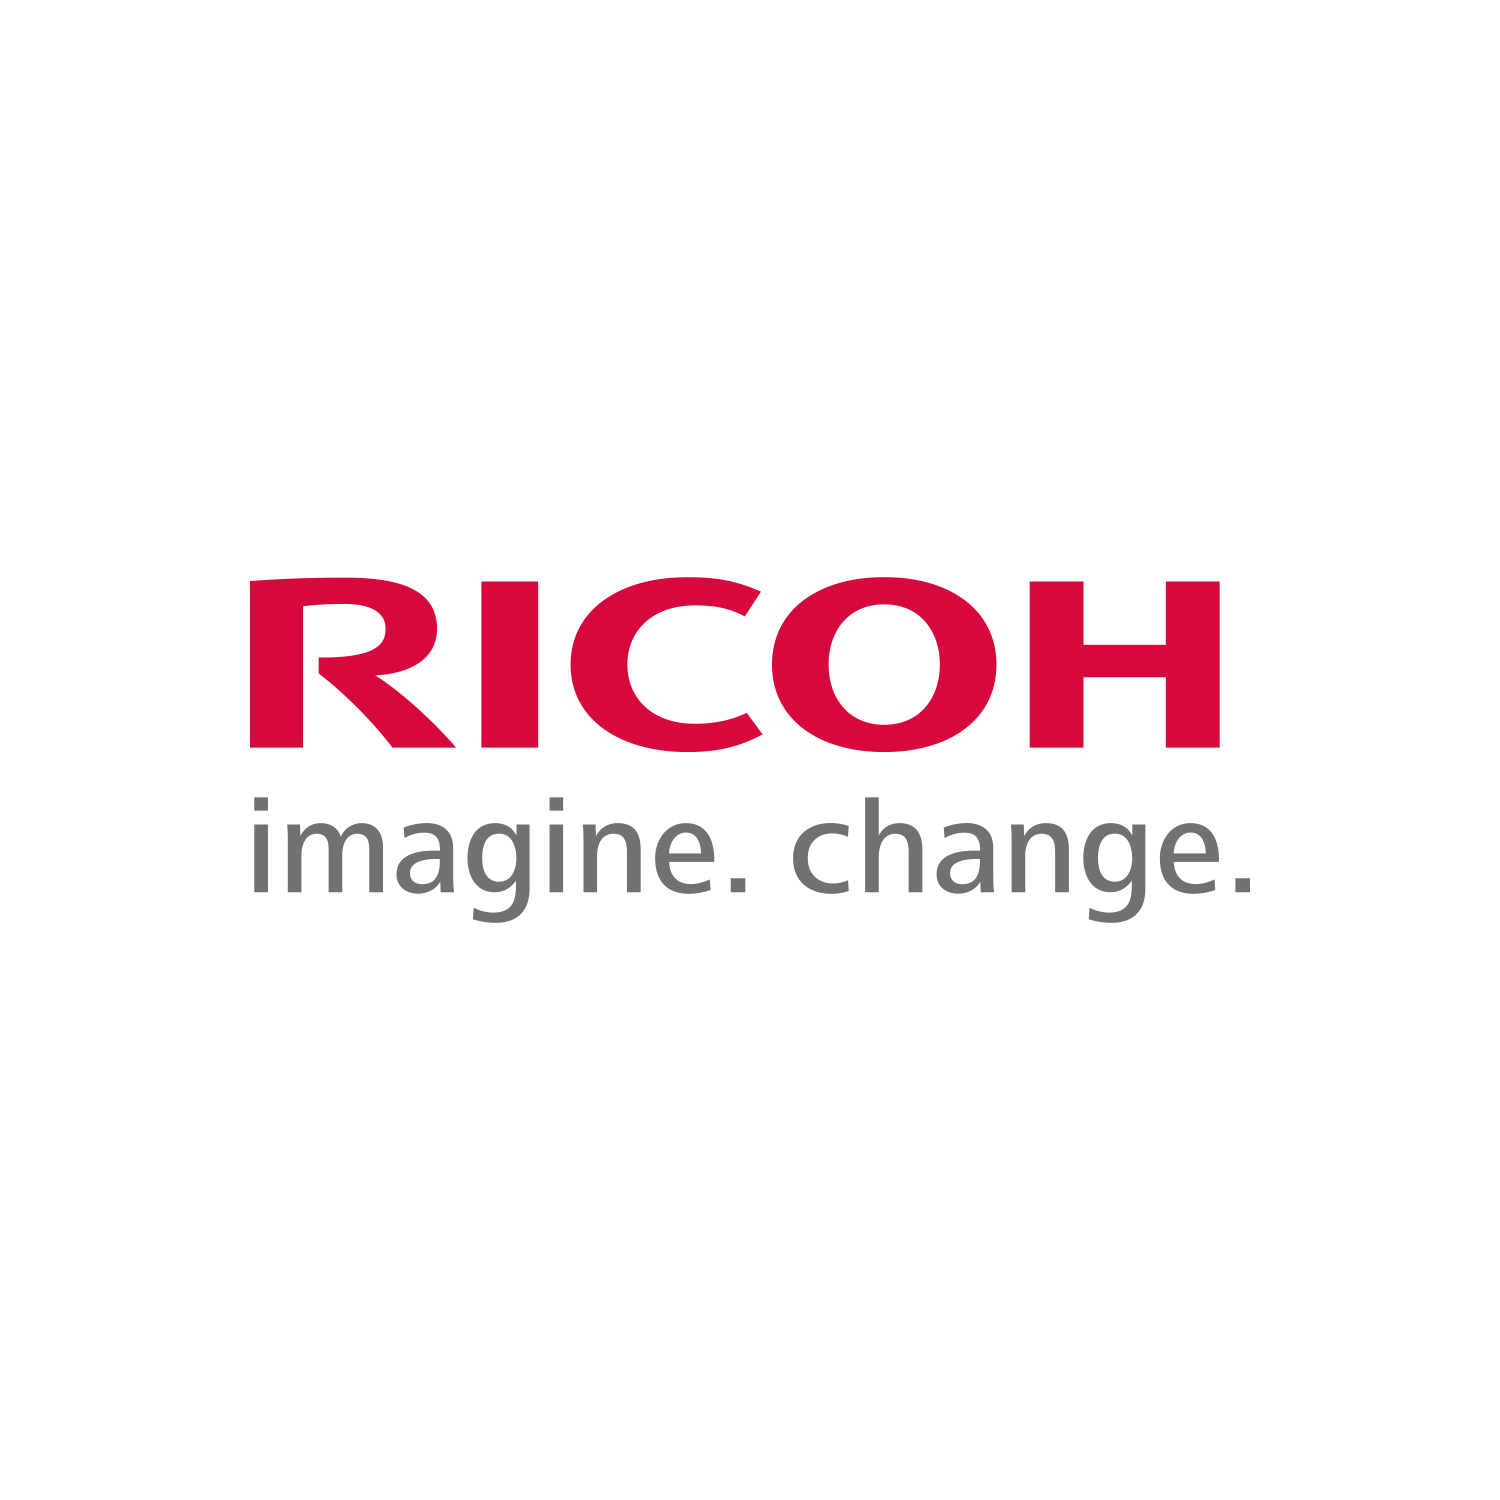 (c) Ricoh.com